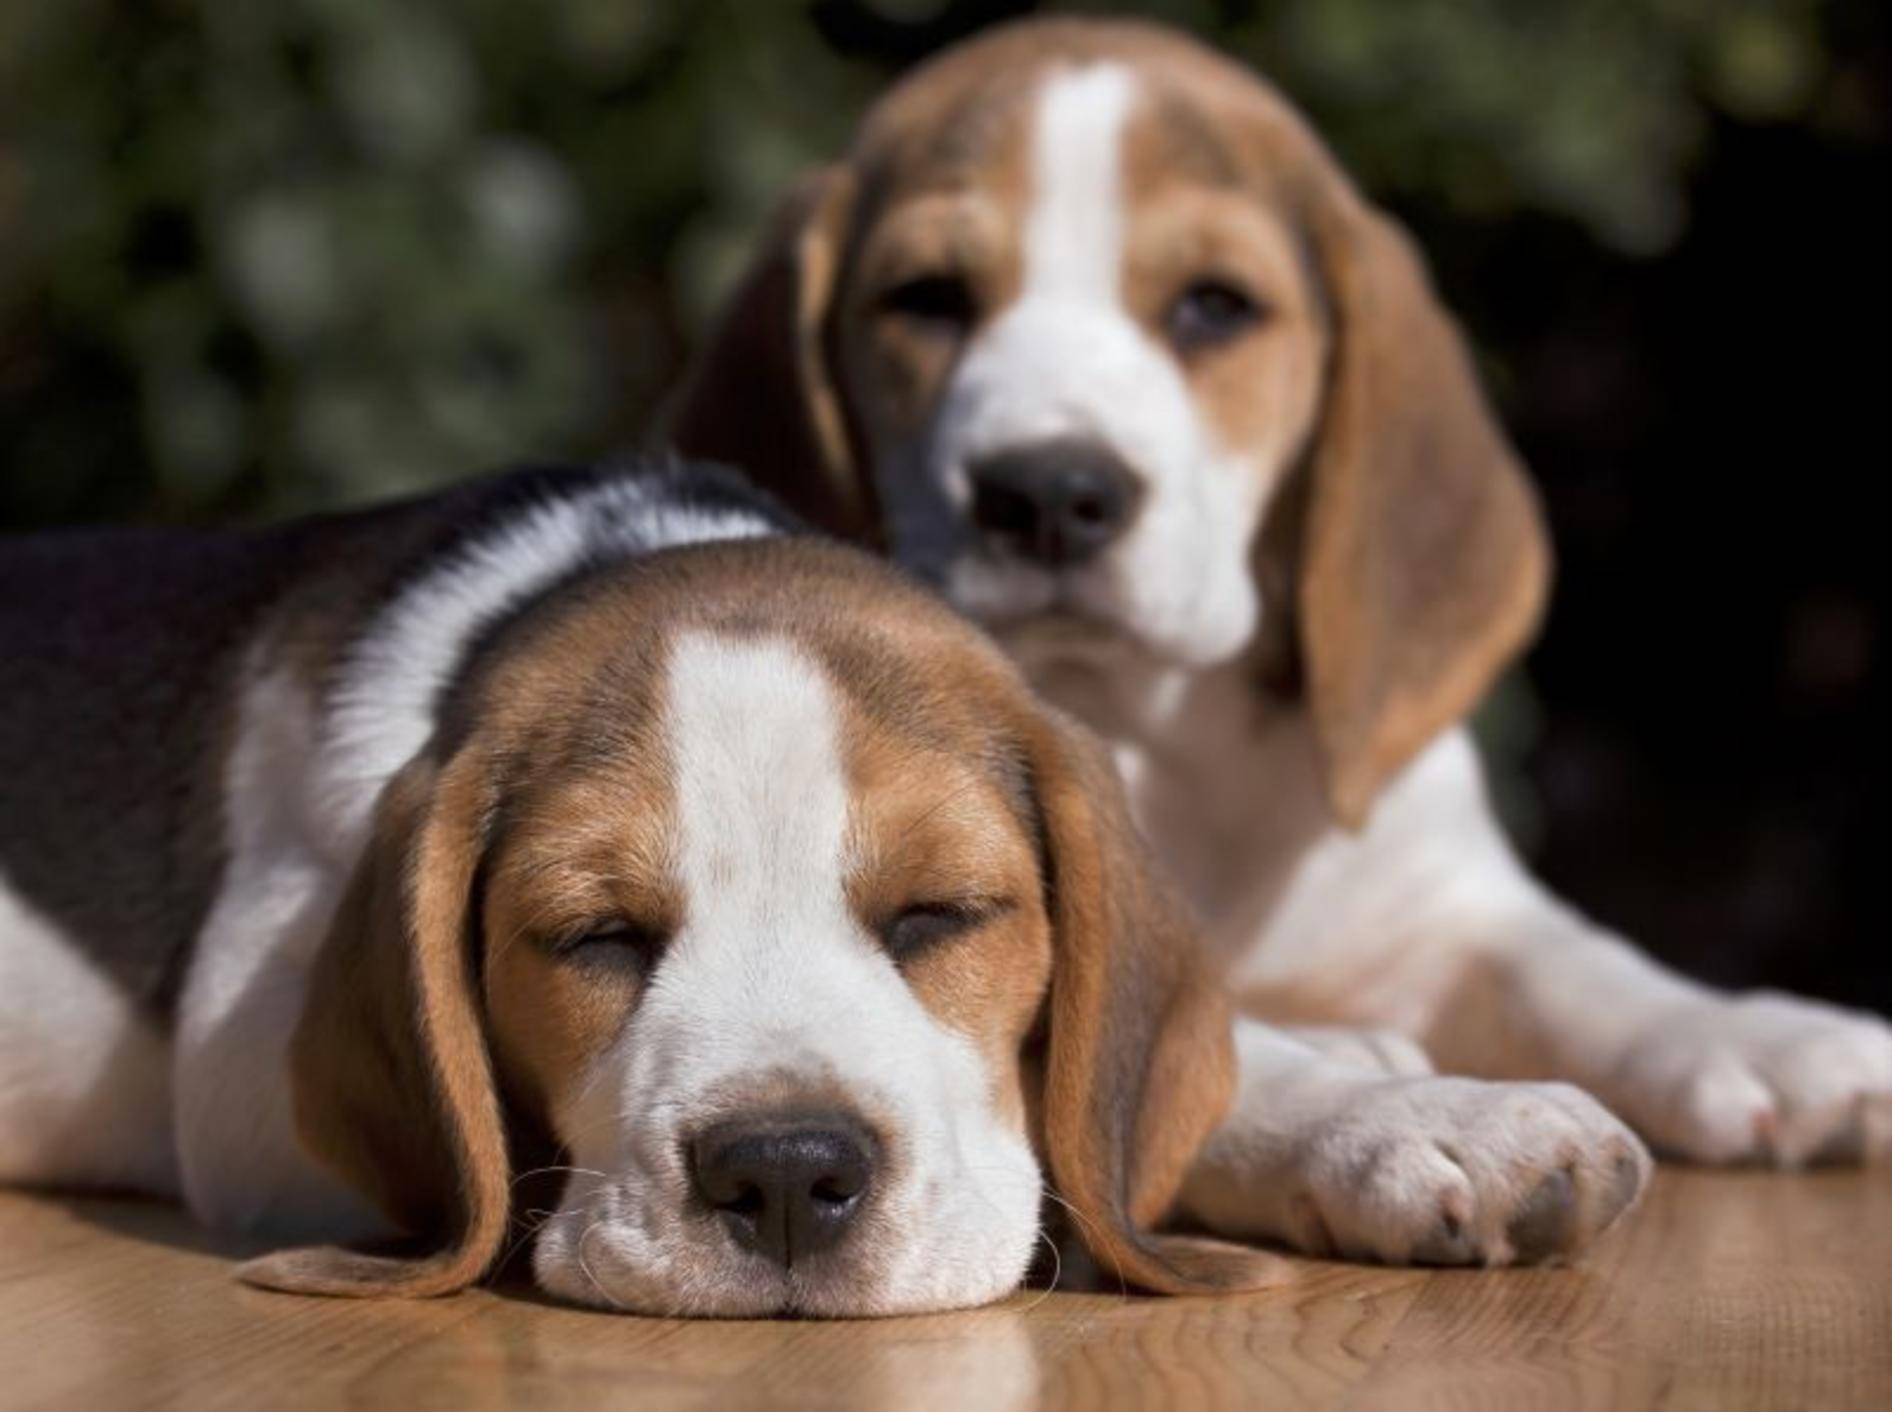 Ein müder, geschwächter Hund könnte unter Wurmbefall leiden — Bild: Shutterstock / Reddogs